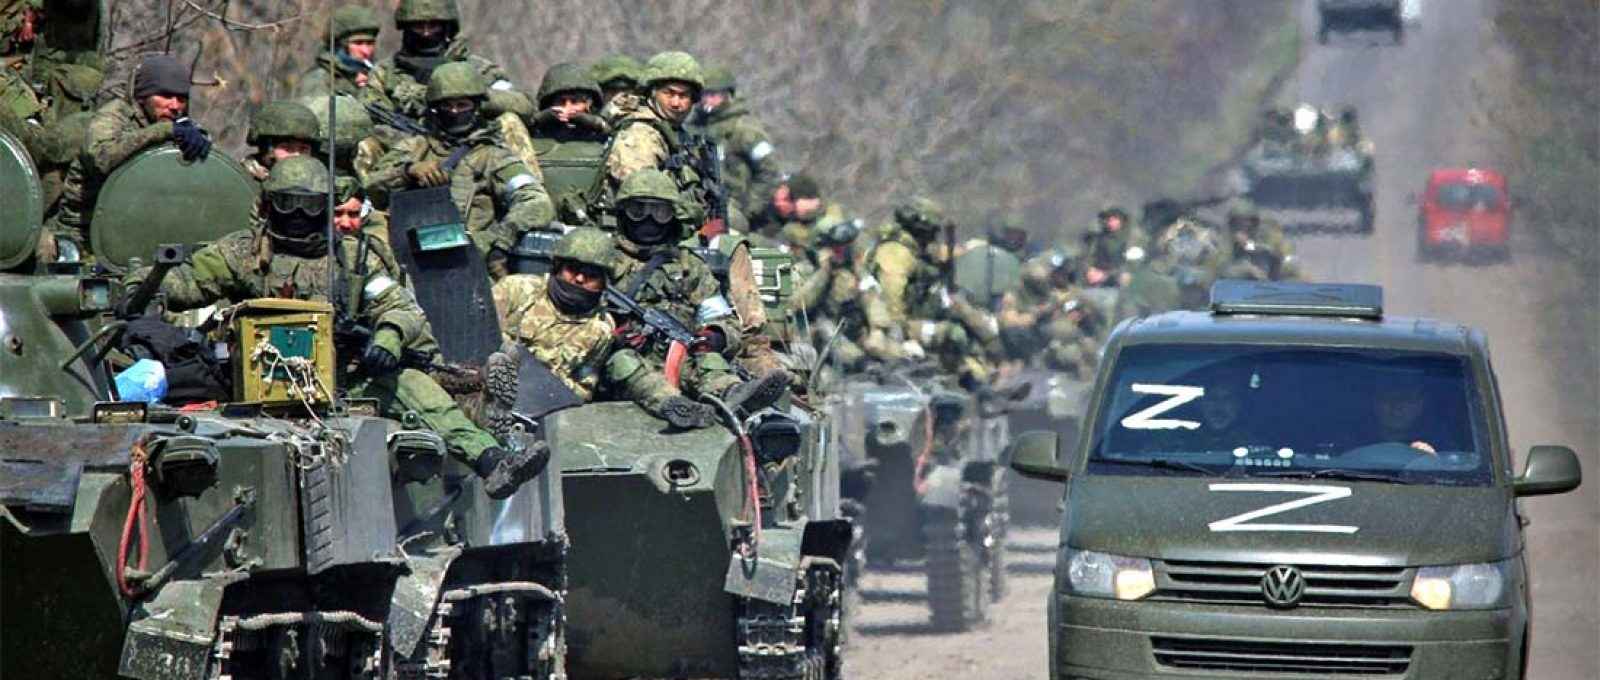 Tropas pró-Rússia em deslocamento em uma estrada que leva a Mariupol, no sul da Ucrânia, na última sexta-feira 15 de abril (Reuters).